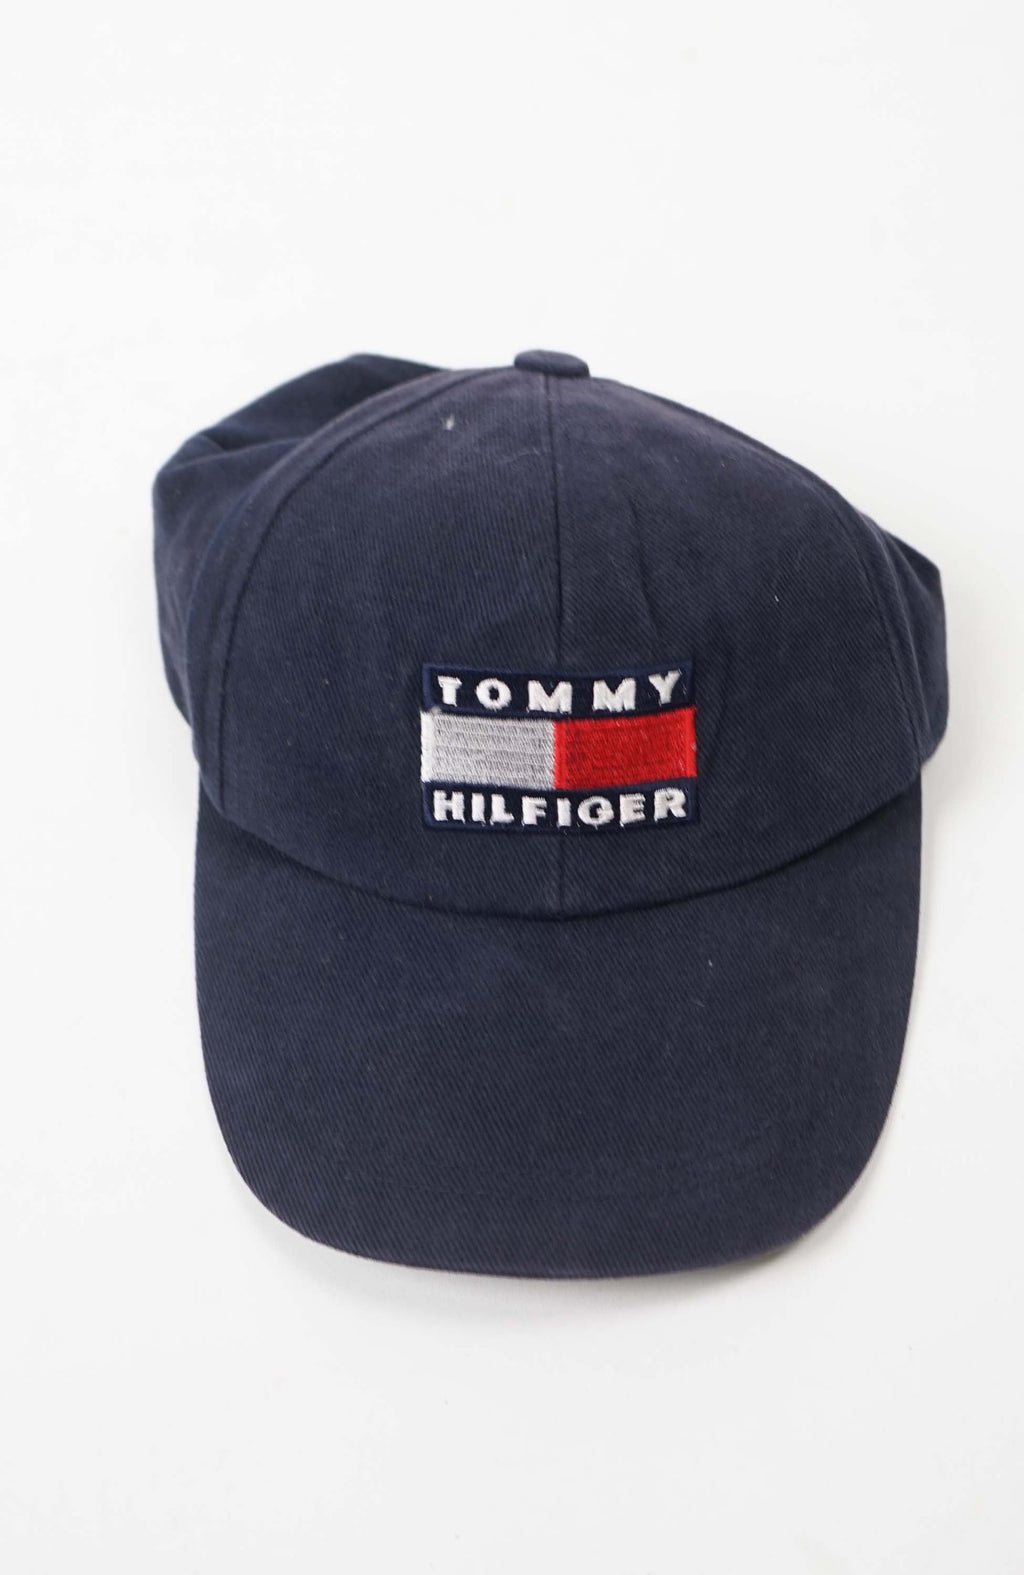 VINTAGE TOMMY HILFIGER HAT